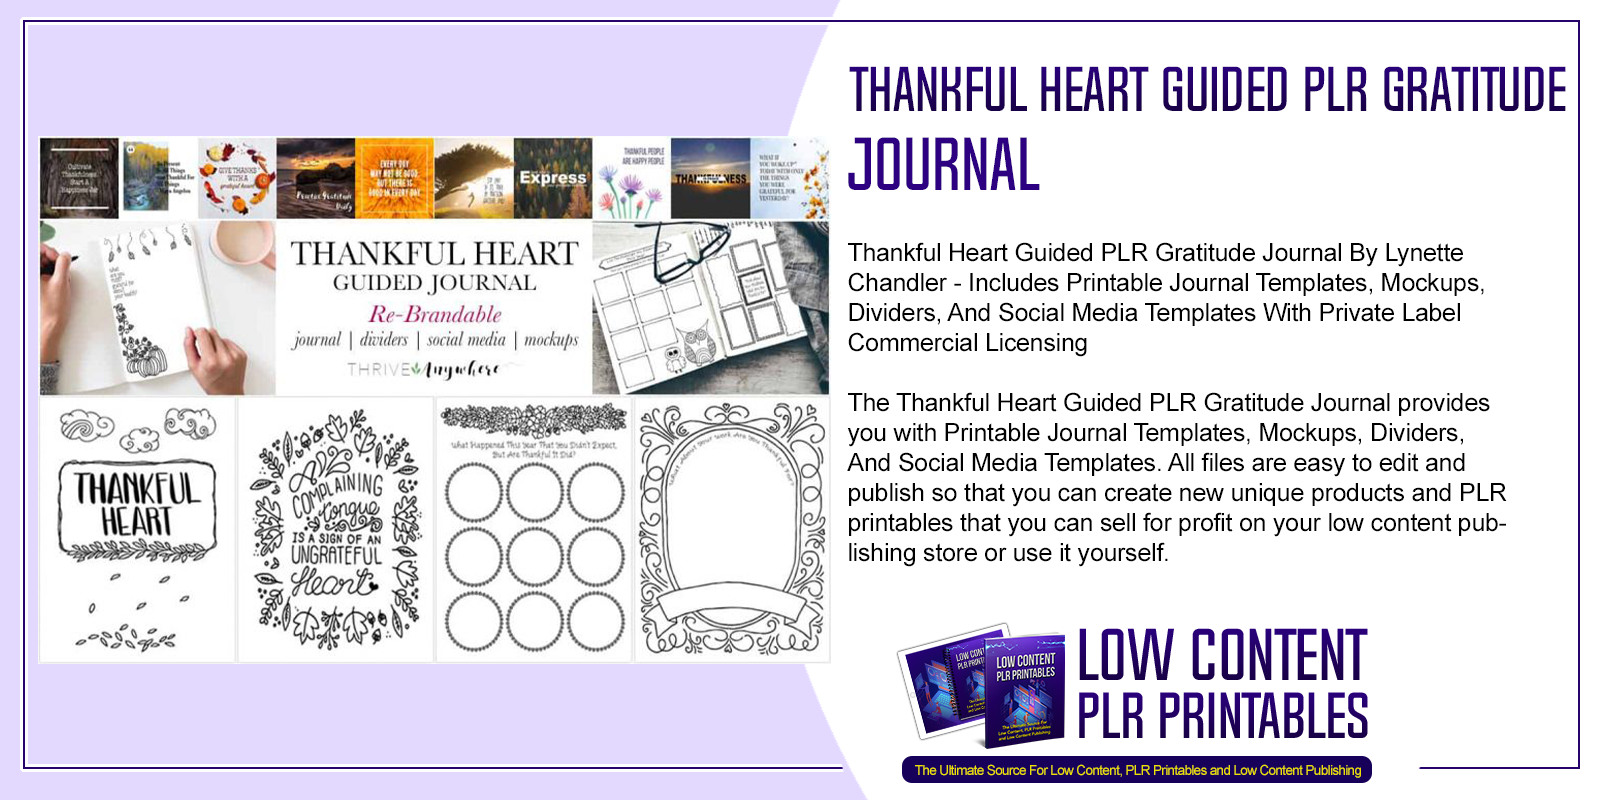 Thankful Heart Guided PLR Gratitude Journal